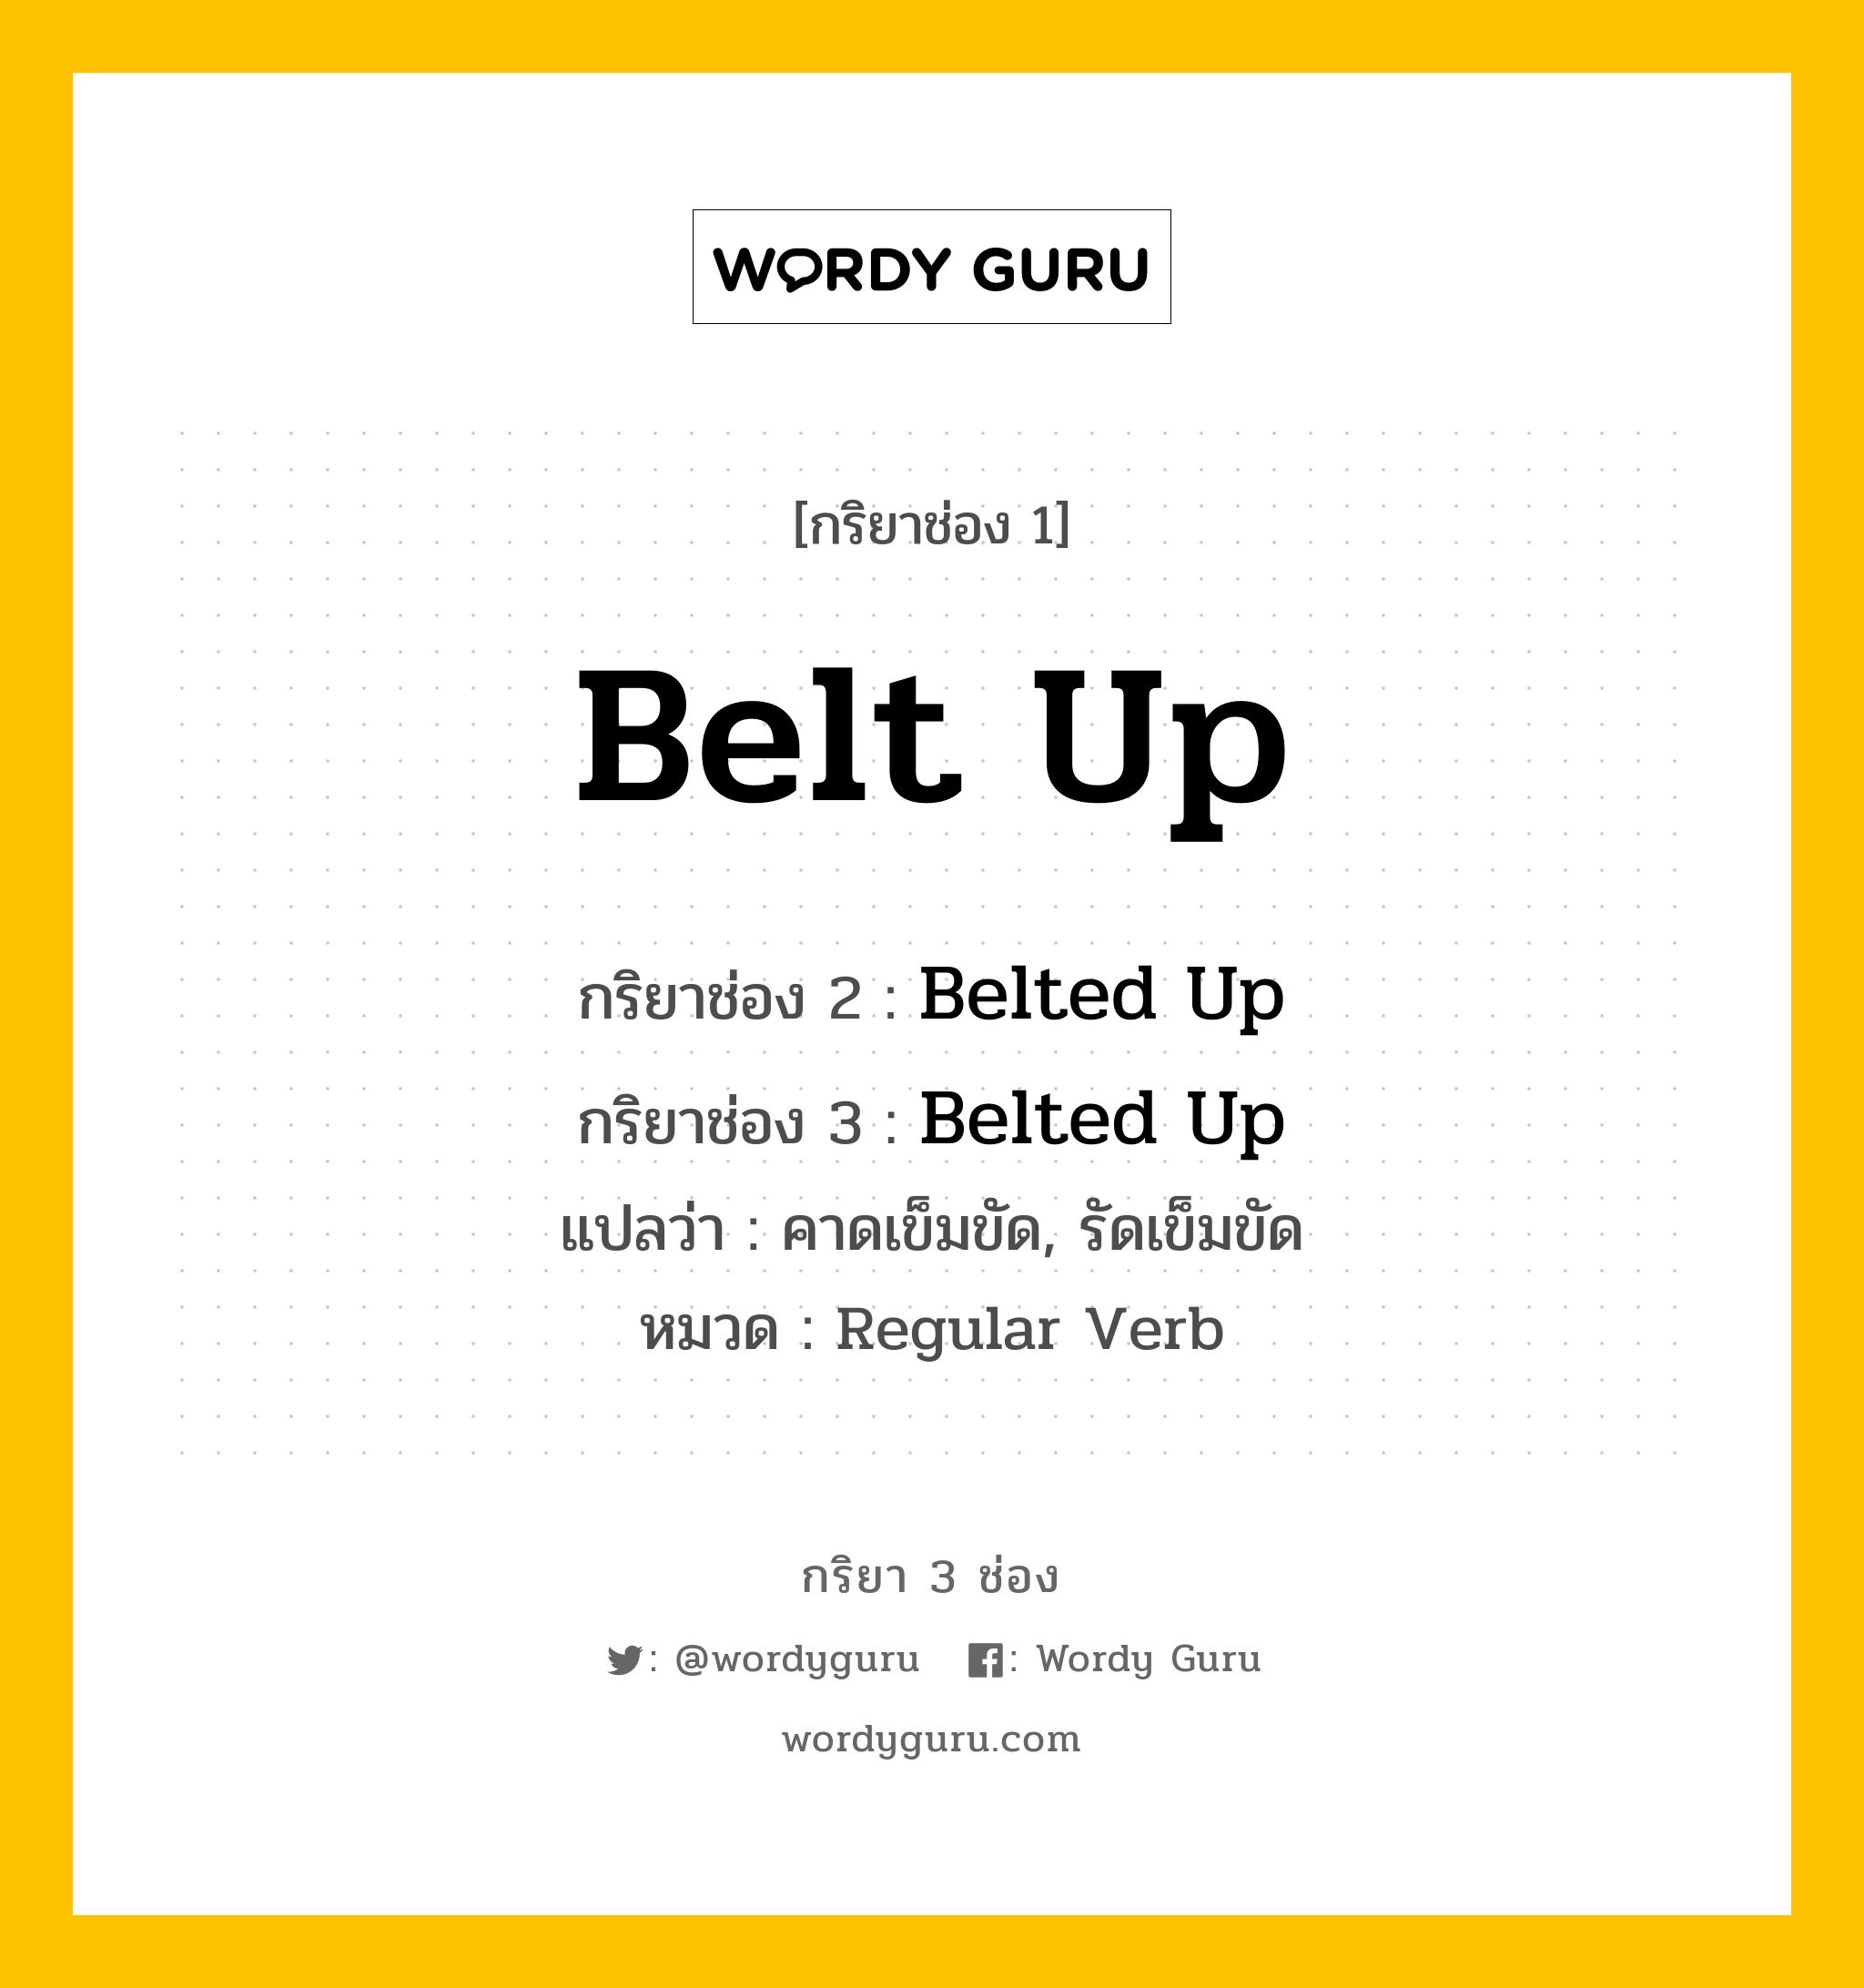 กริยา 3 ช่อง ของ Belt Up คืออะไร?, กริยาช่อง 1 Belt Up กริยาช่อง 2 Belted Up กริยาช่อง 3 Belted Up แปลว่า คาดเข็มขัด, รัดเข็มขัด หมวด Regular Verb หมวด Regular Verb